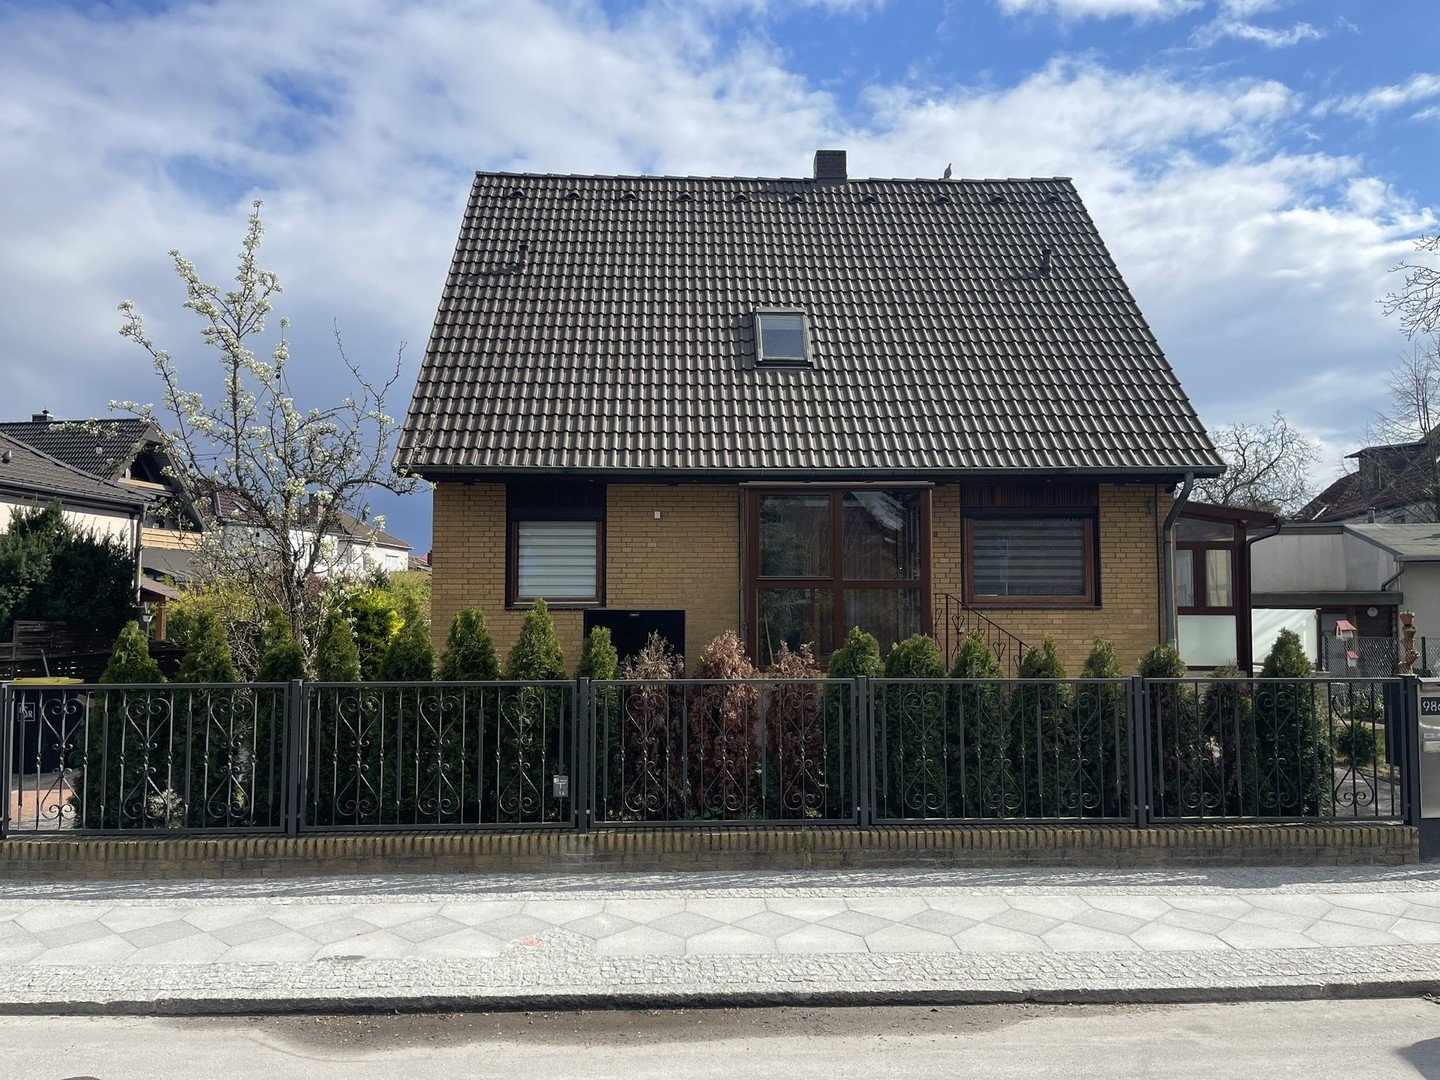 Freistehendes Einfamilienhaus in Reinickendorf zu vermieten / nähe Wittenau